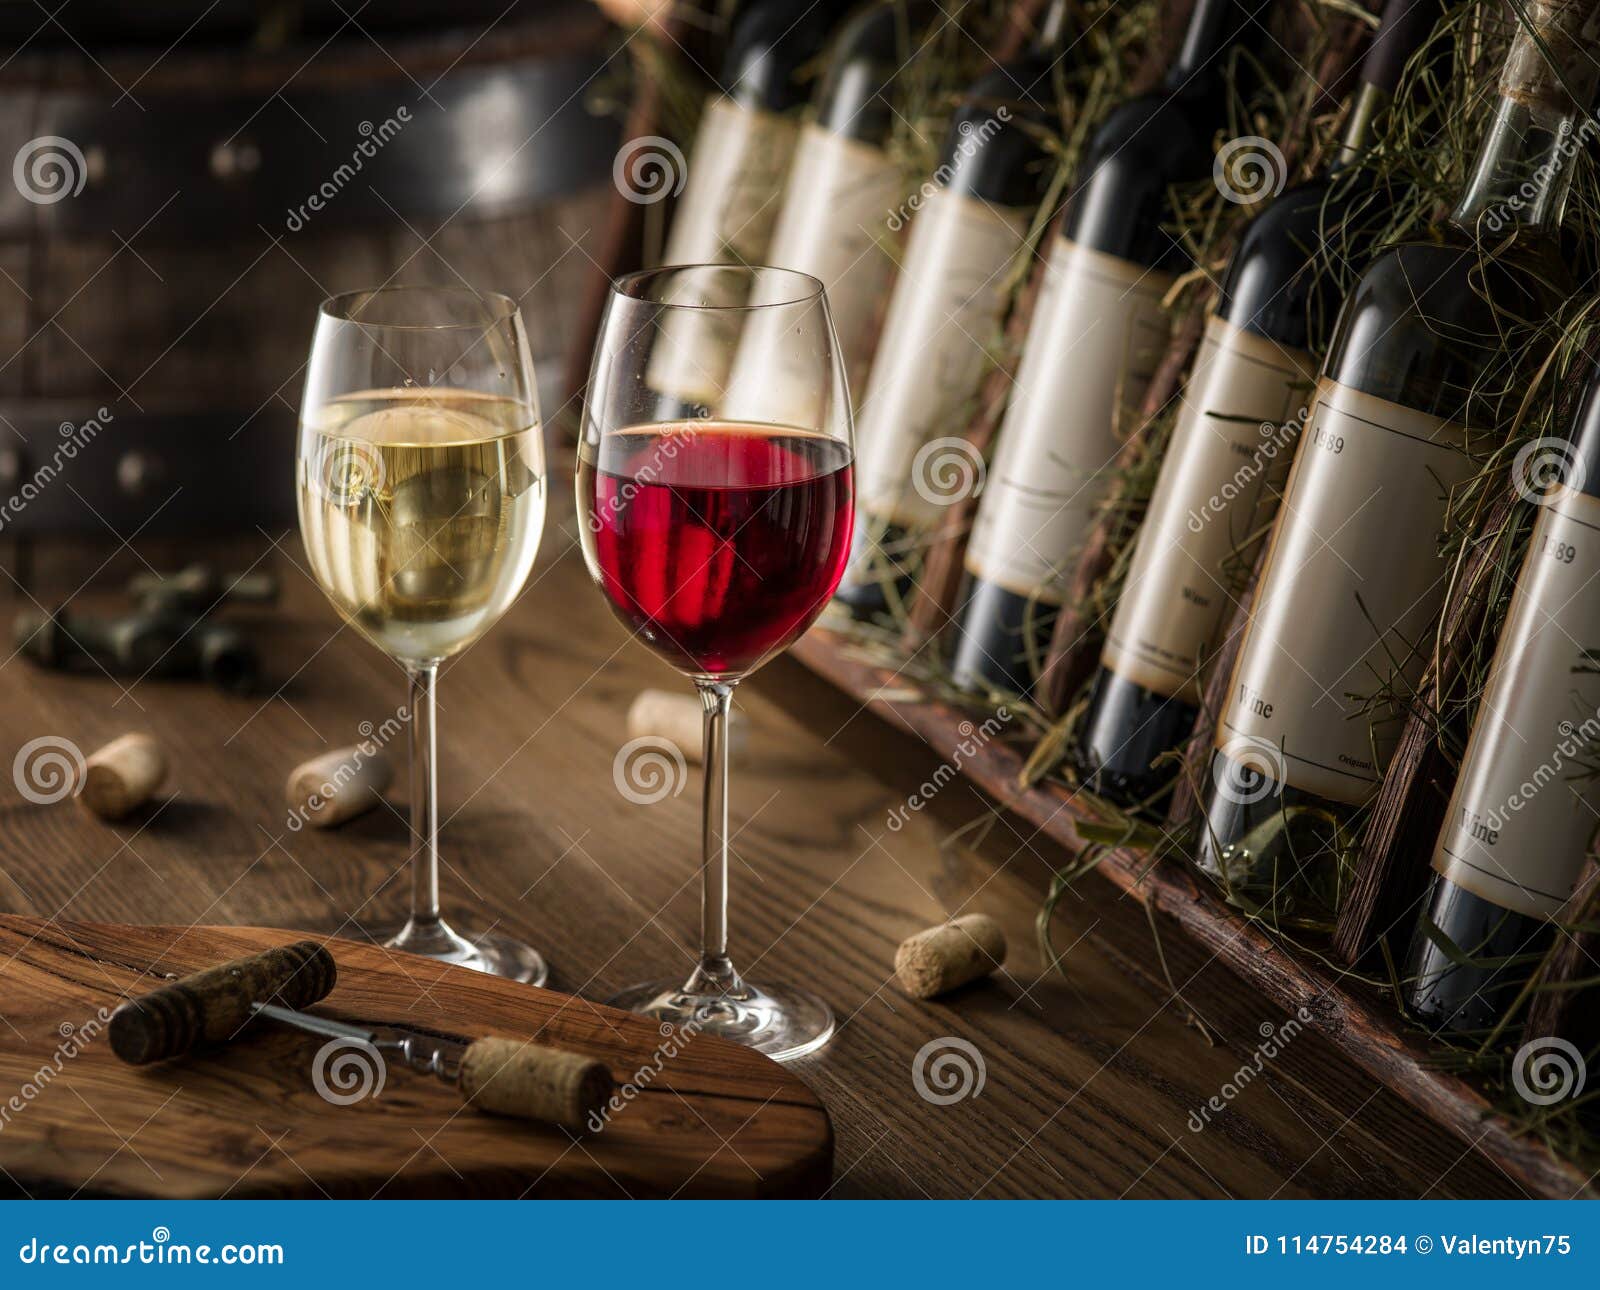 wine bottles on the wooden shelf.